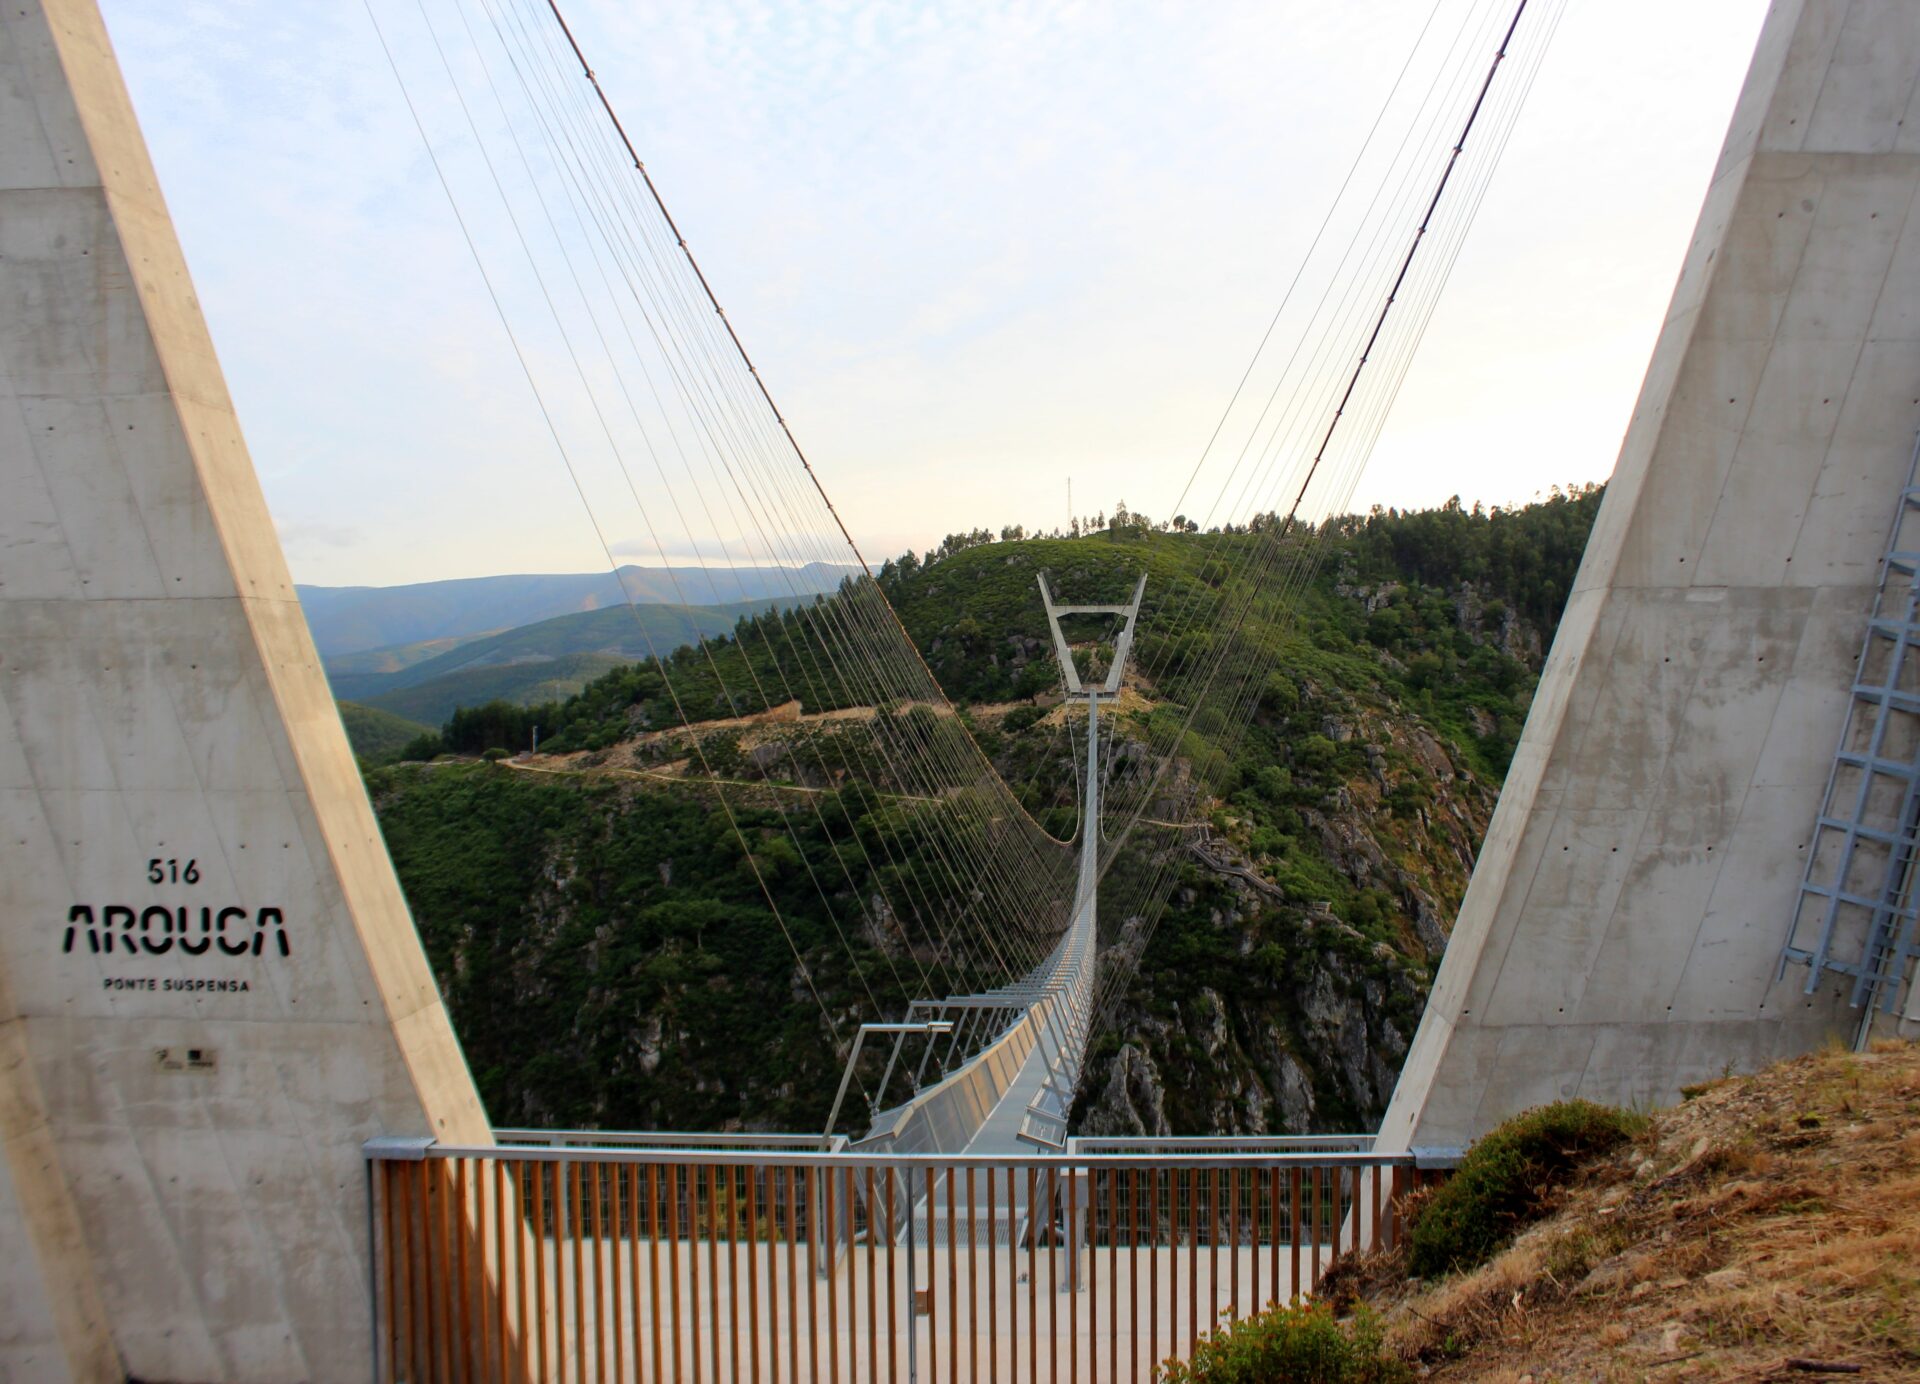 Puente 516 Arouca Portugal